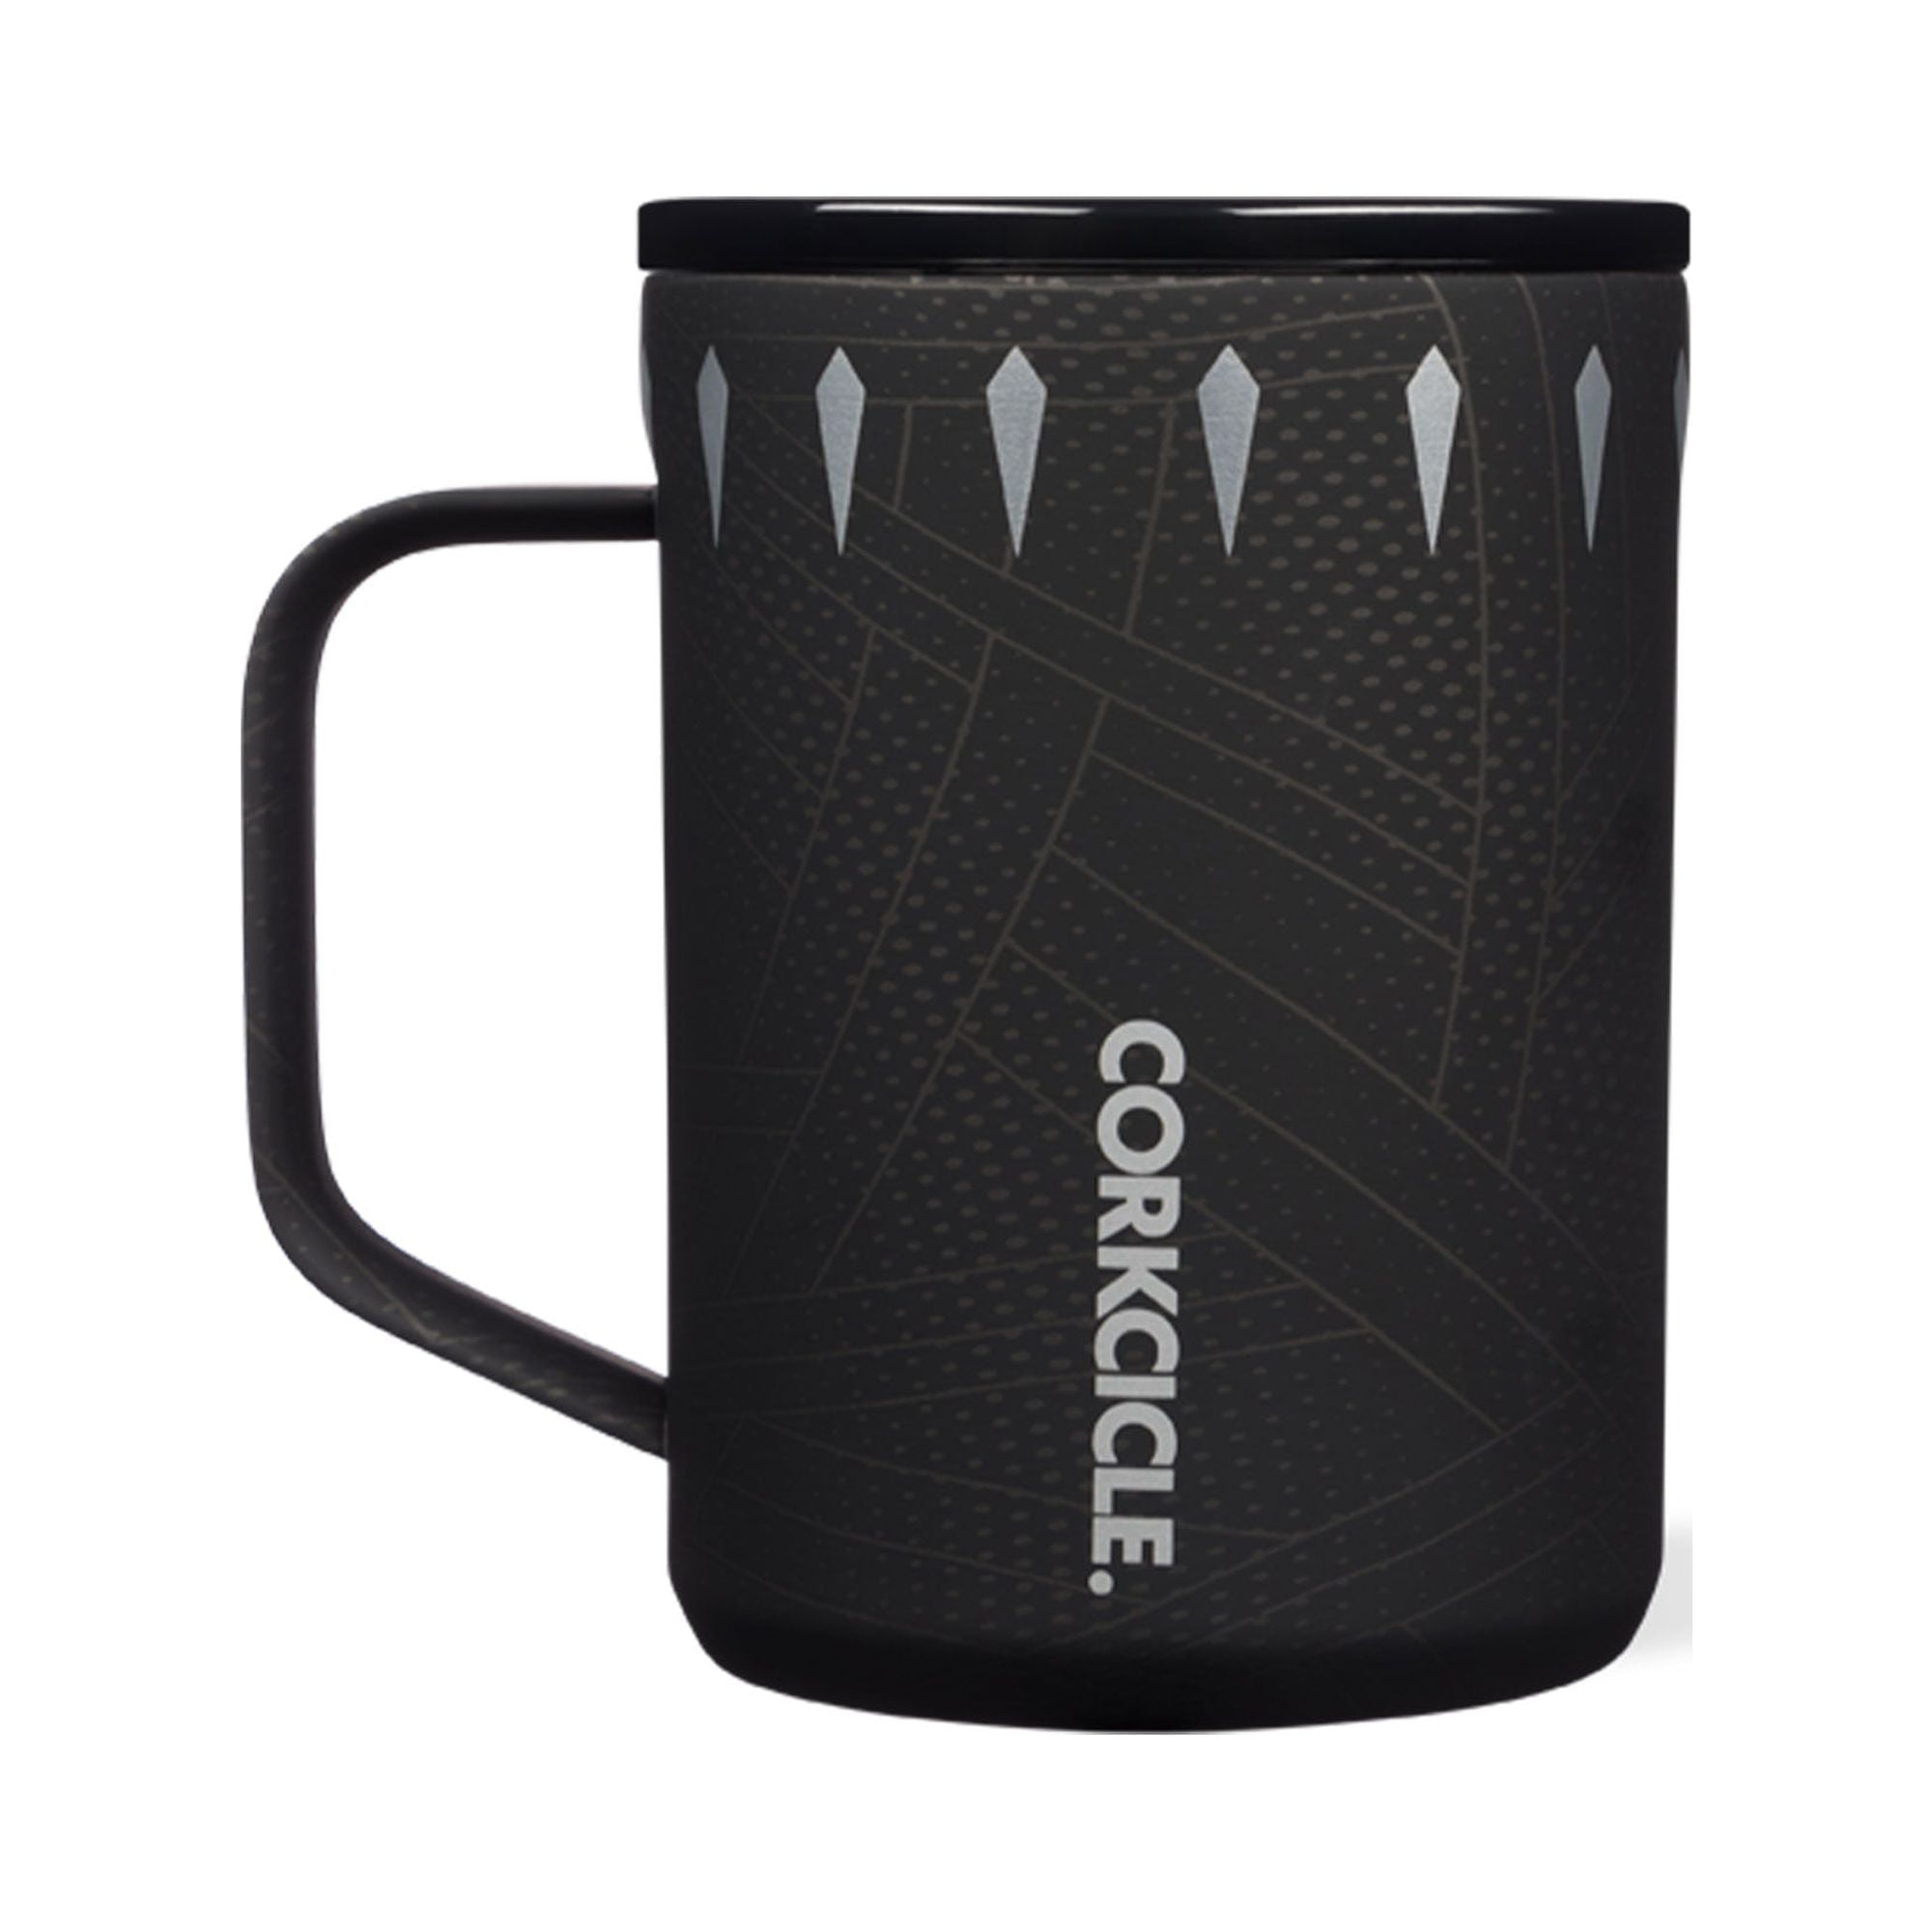 Corkcicle - 16oz. Coffee Mug